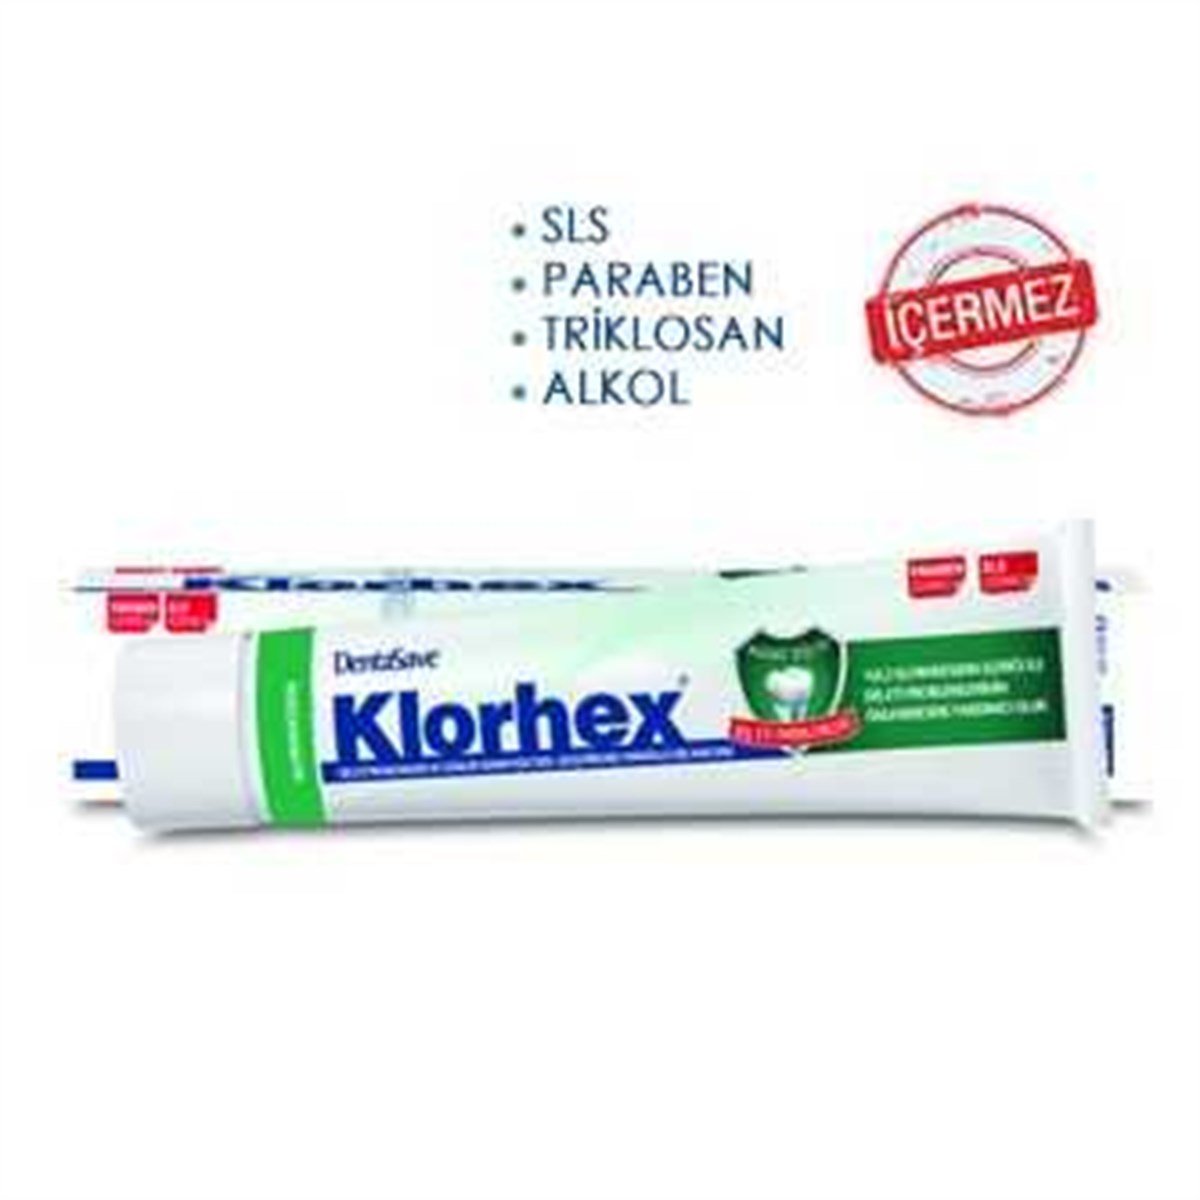 DentaSave Klorhex Diş Macunu 75ml Fiyatları | Dermosiparis.com